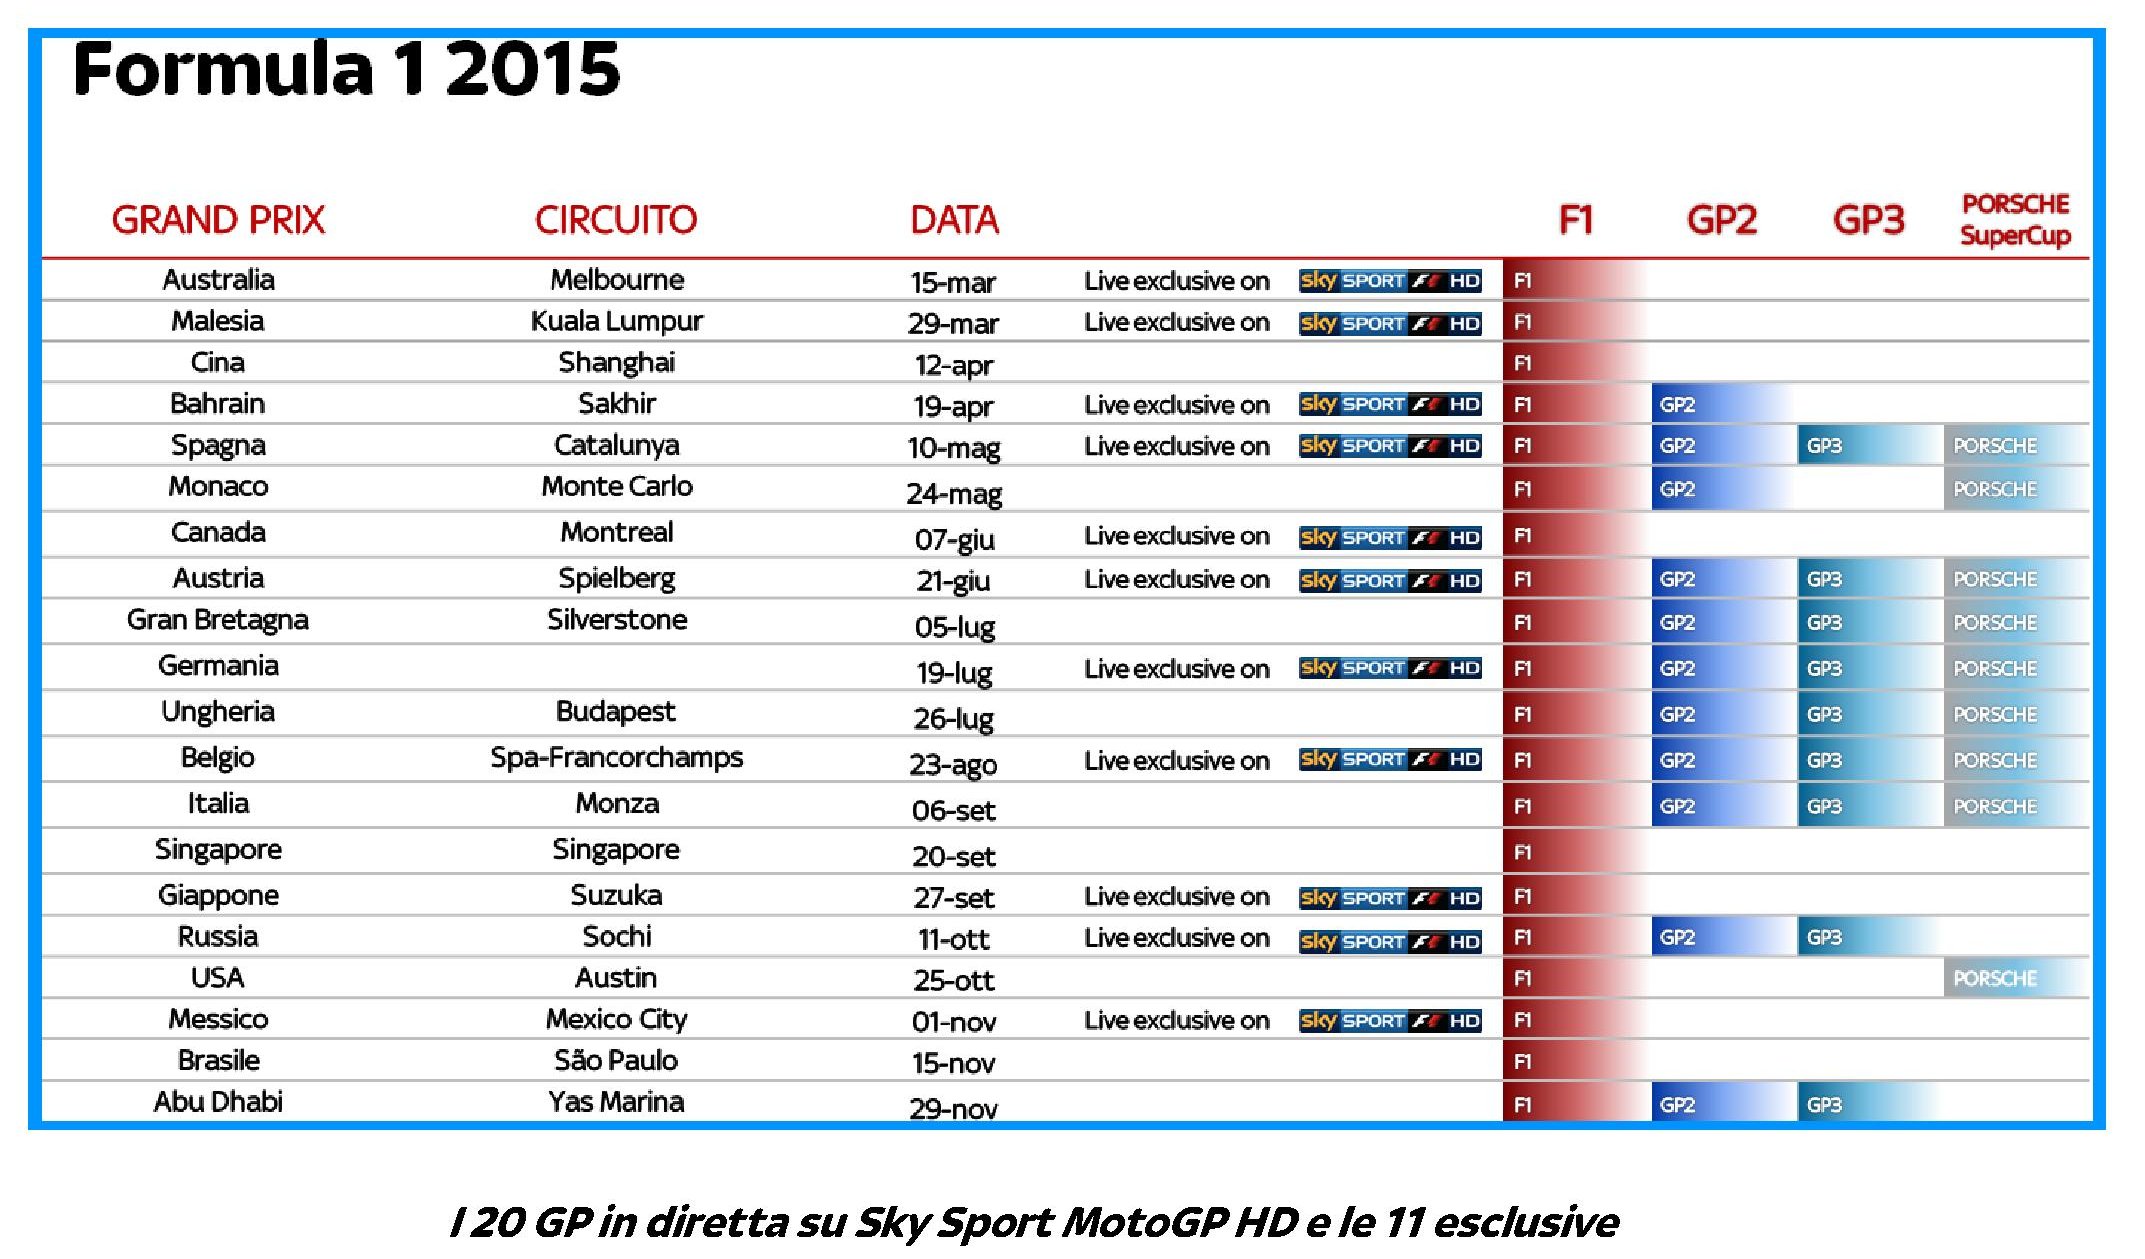 Stagione 2015 #SkyMotori, 38 Gran Premi live con 21 dirette esclusive